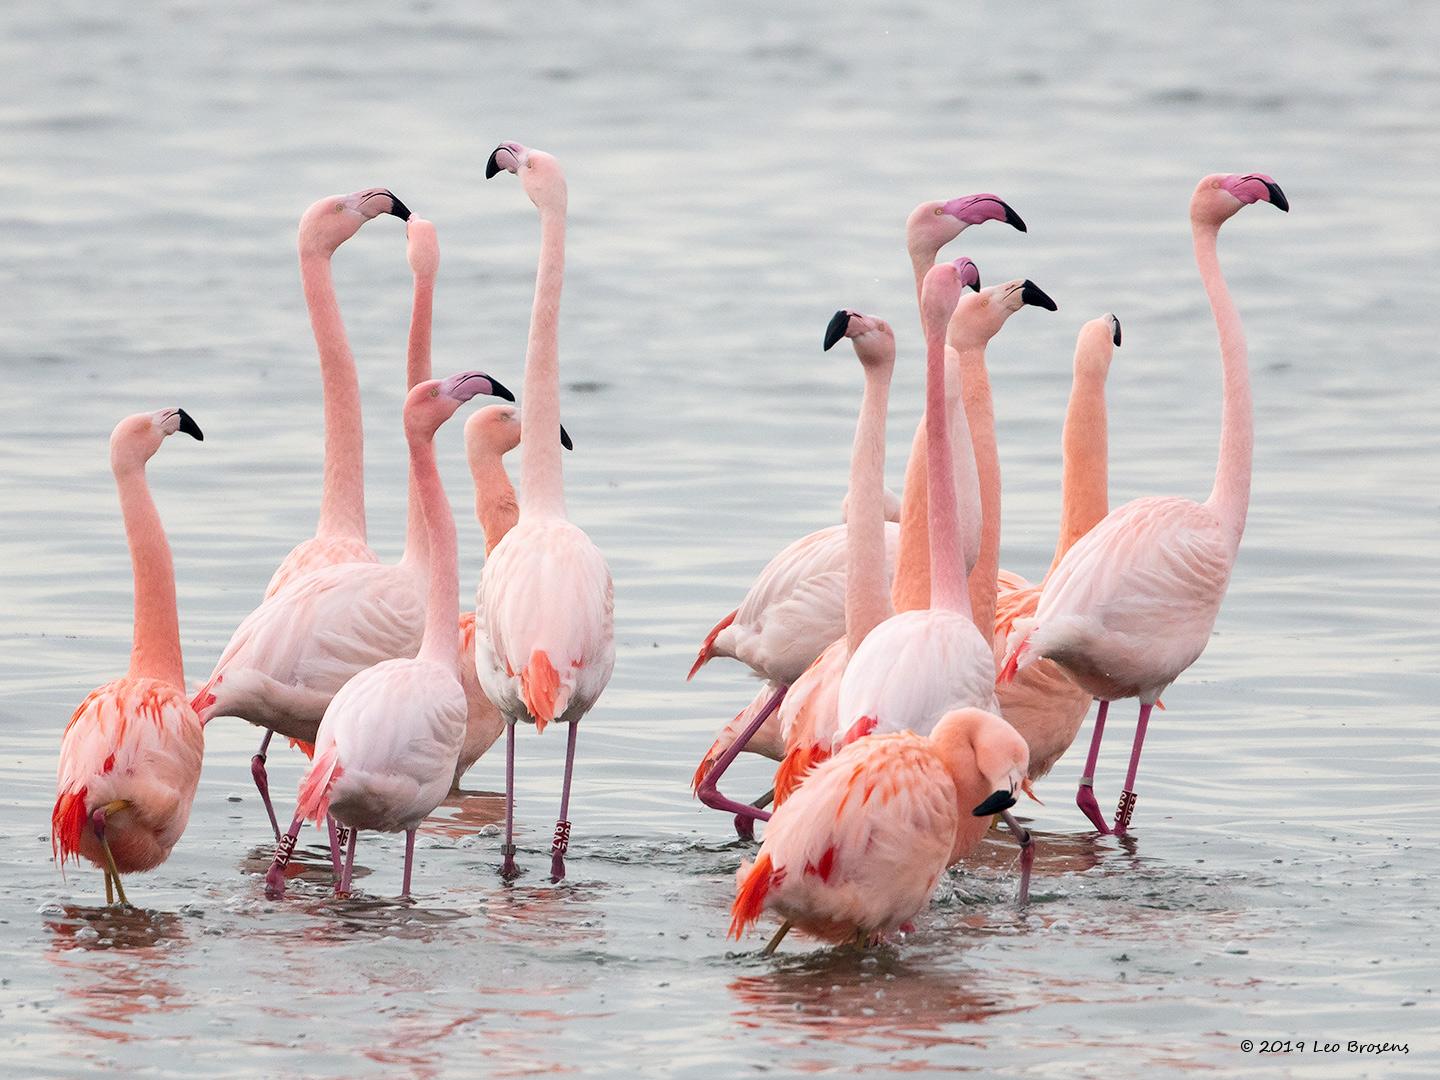 Flamingo-20190118g1440aYSXX3928crfb.jpg